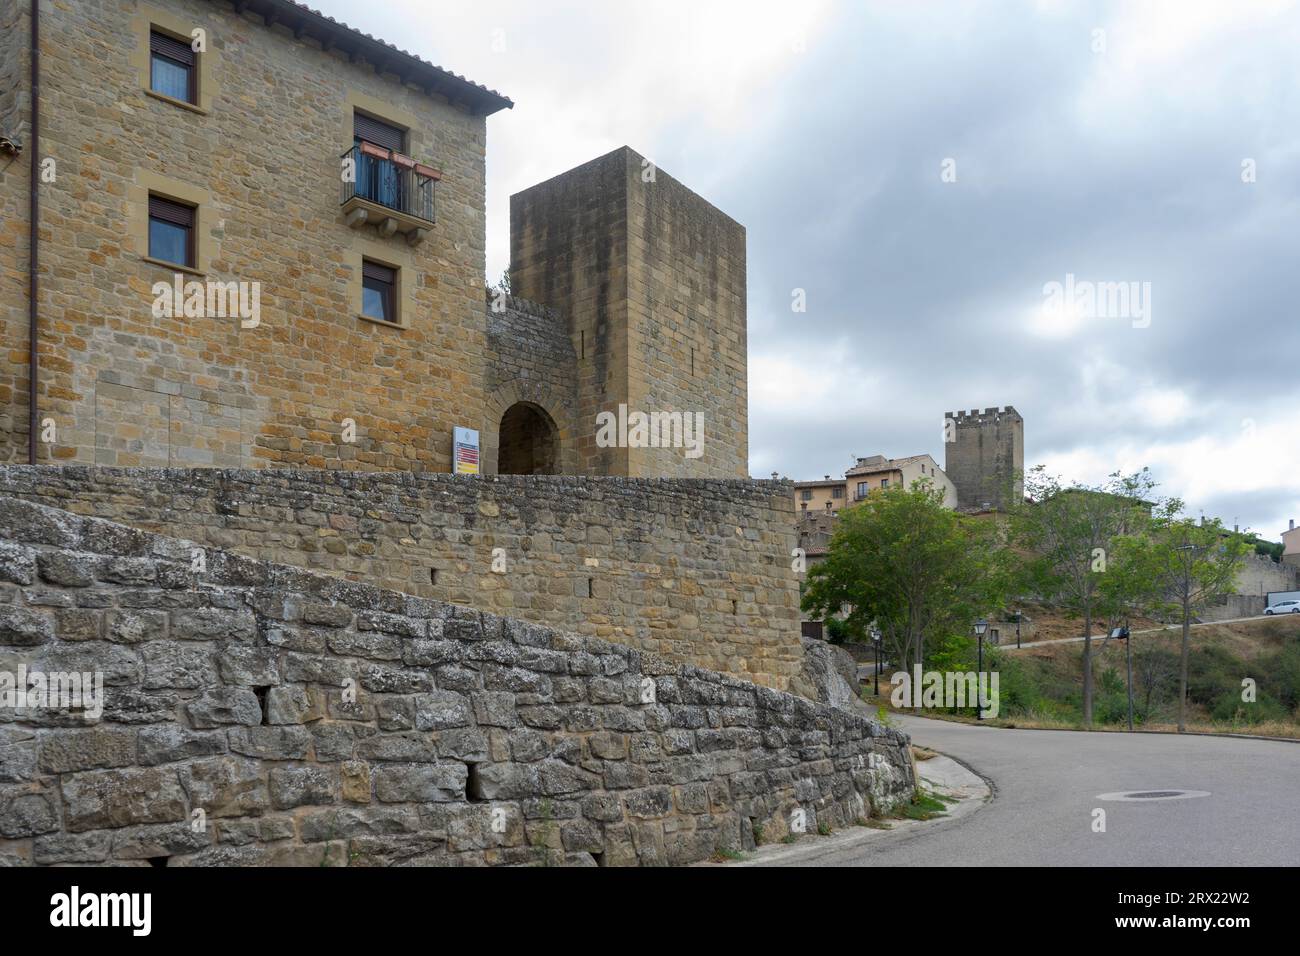 Passeggia per le strade della città medievale di SOS del Rey Catolico, Spagna Foto Stock